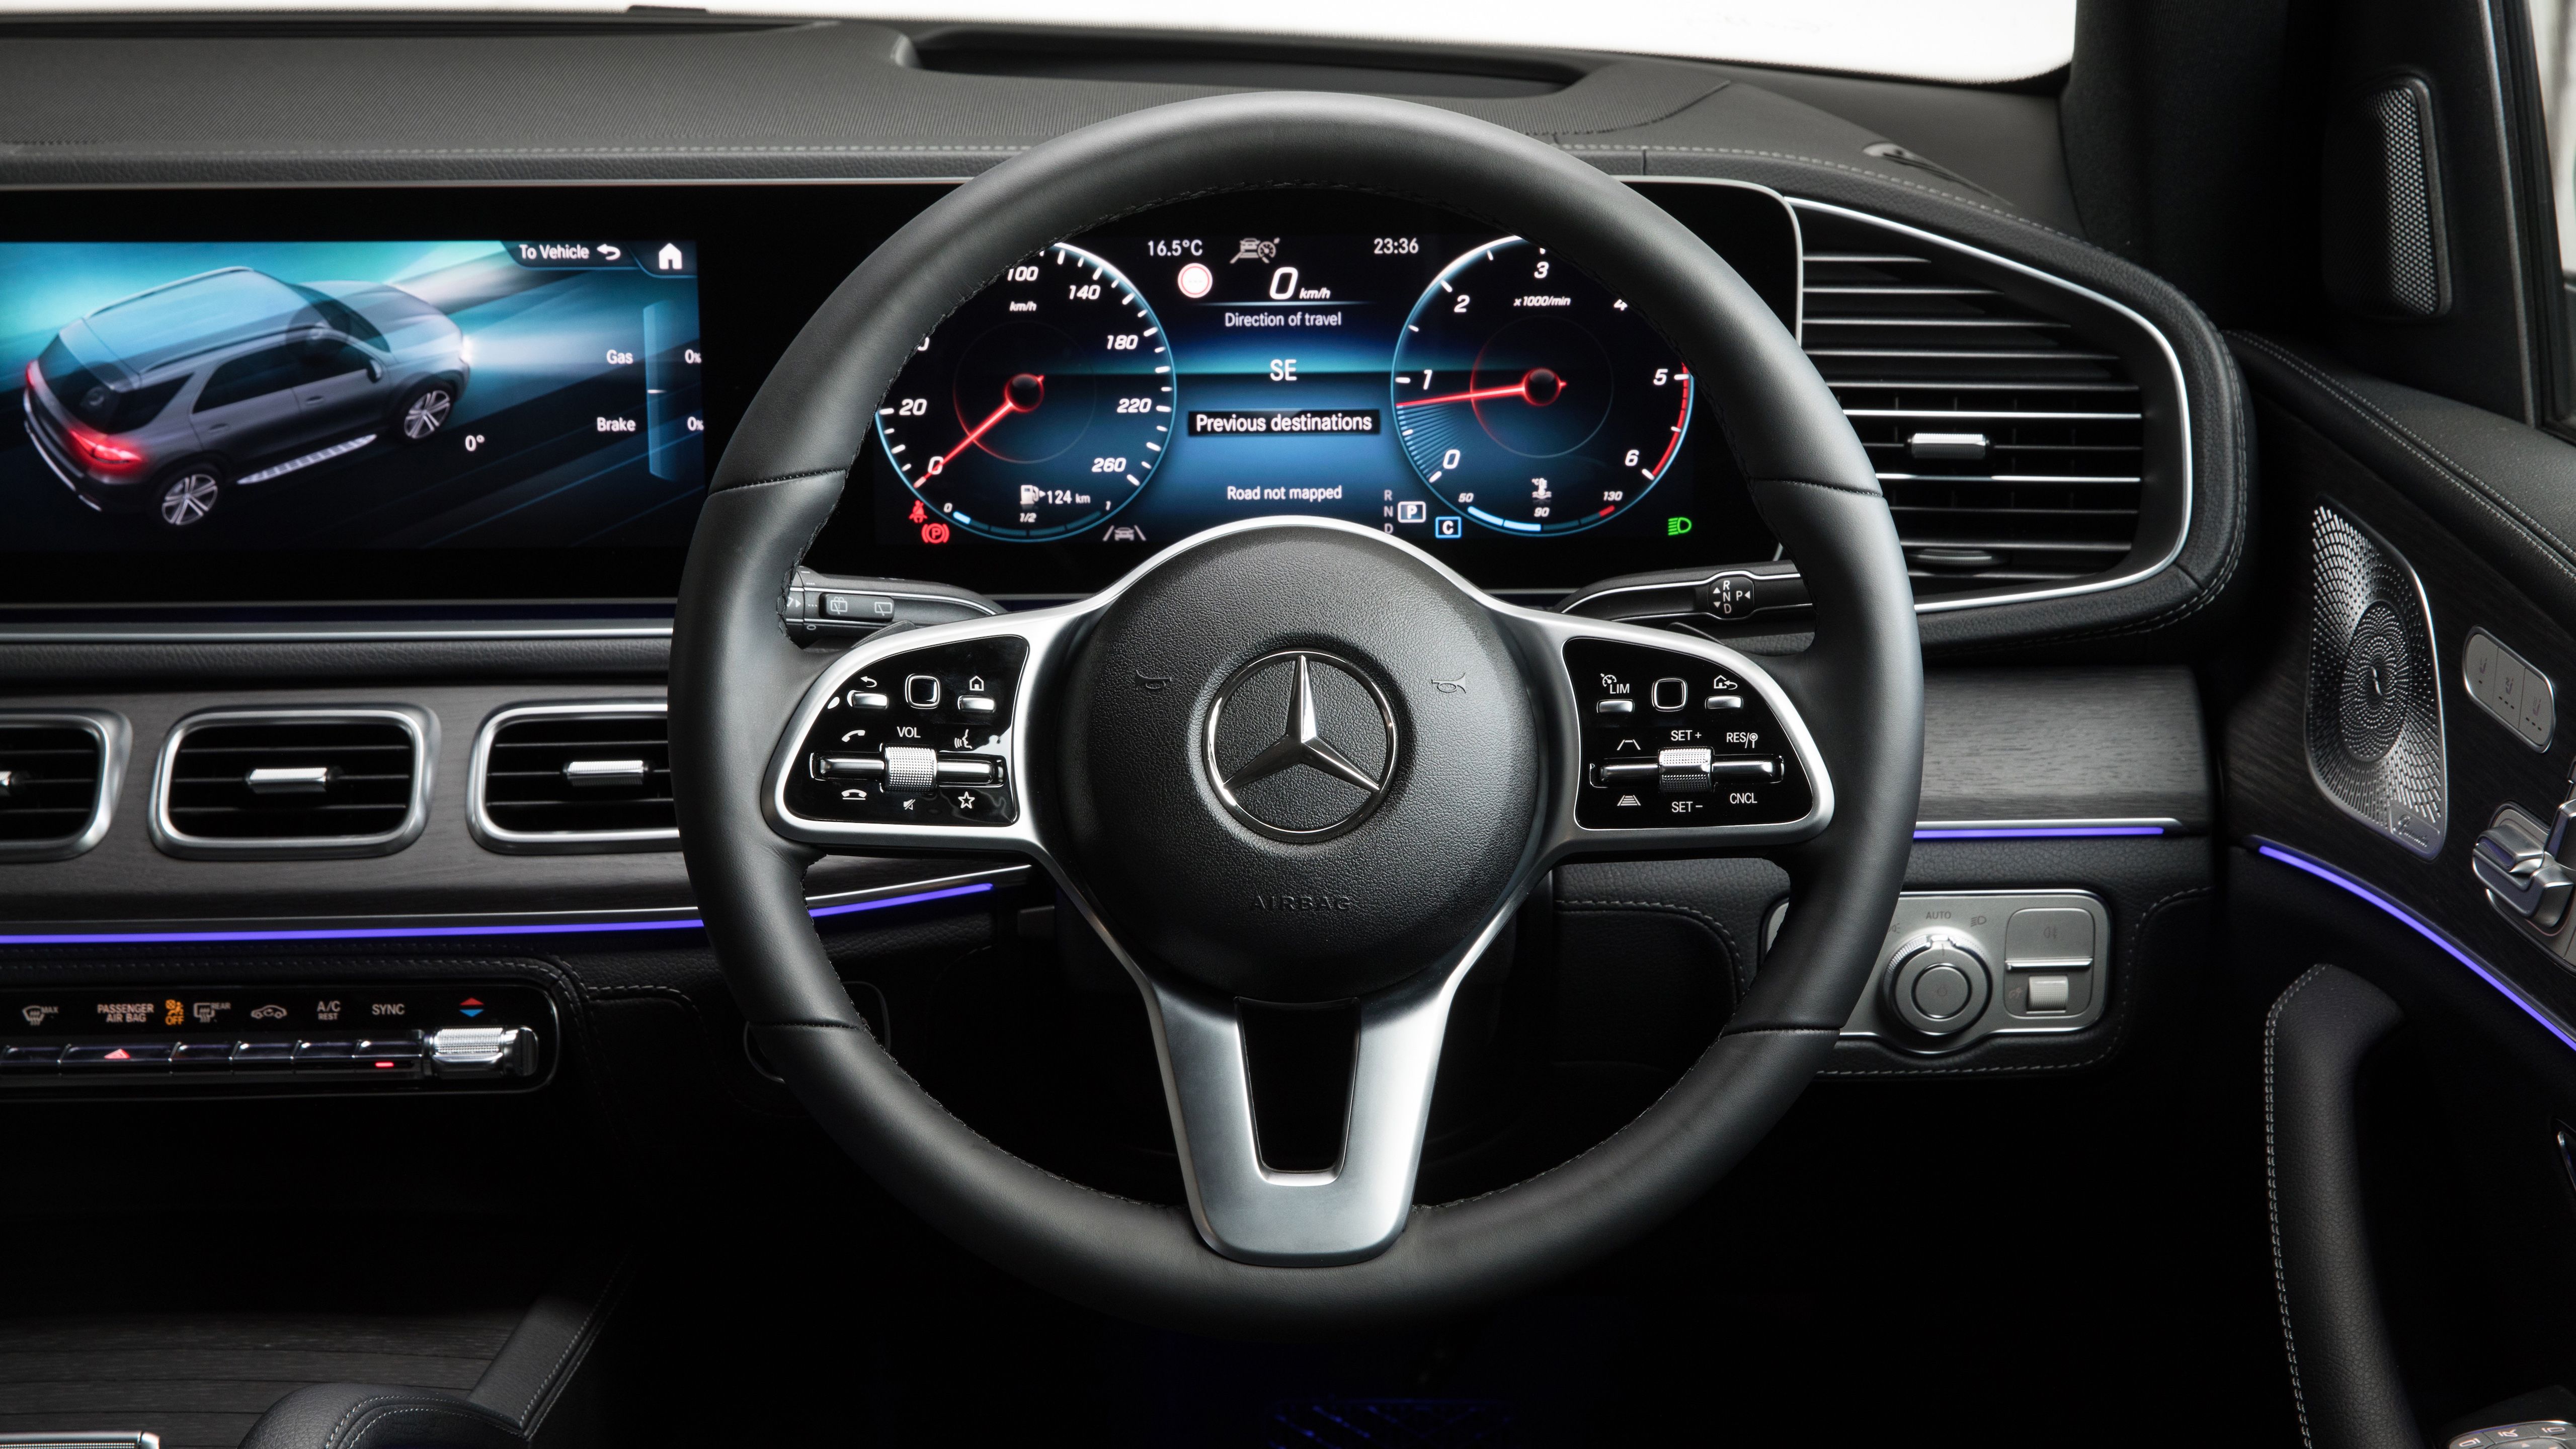 Mercedes Benz GLE 300 D 4MATIC AMG Line 2019 4K Interior Wallpaper. HD Car Wallpaper